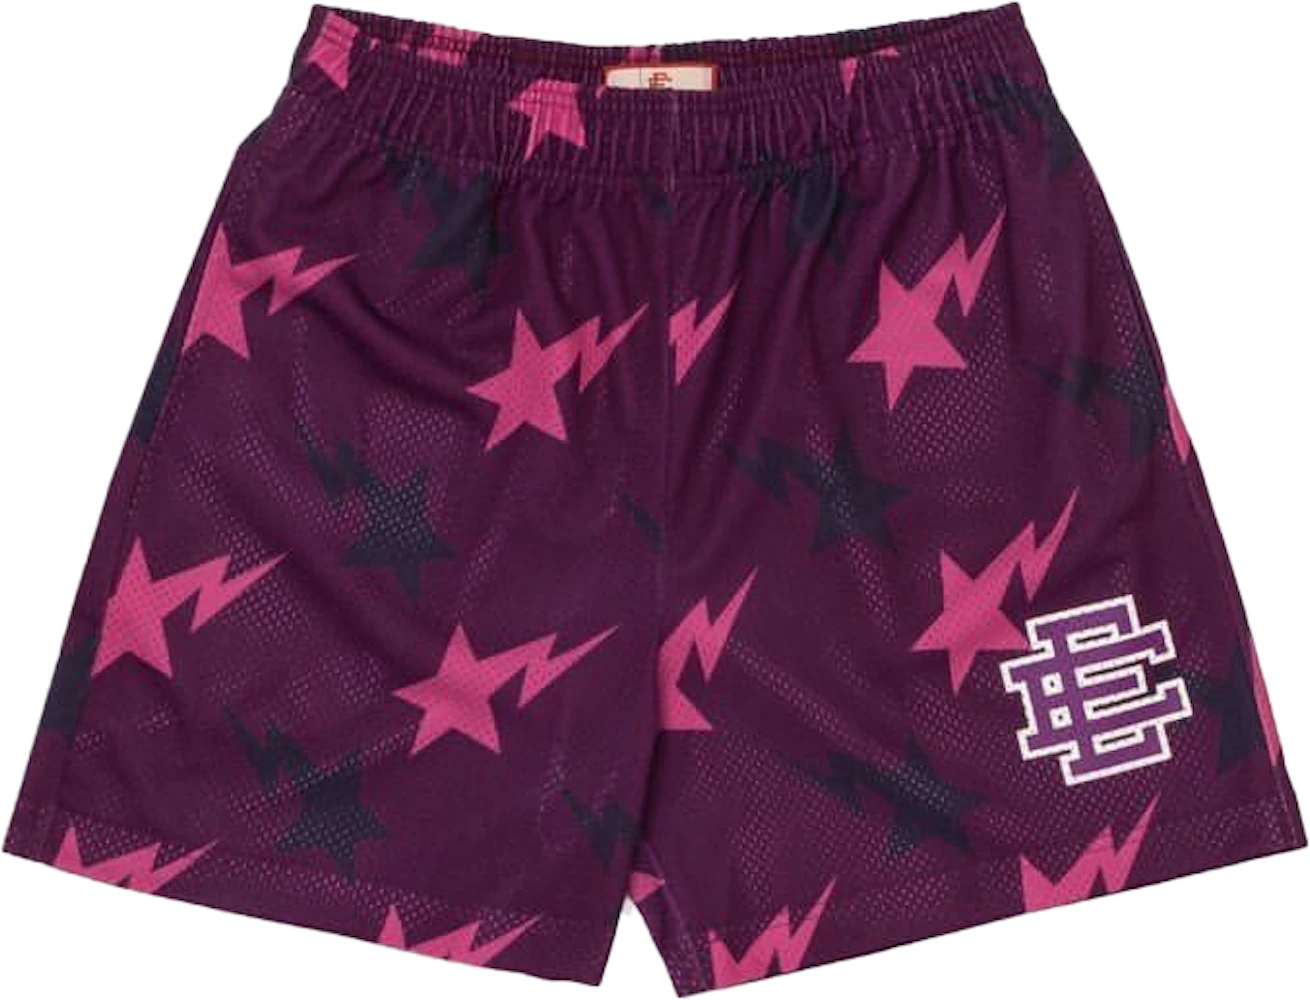 Eric Emanuel x BAPE Miami Basic Short Purple/Pink/Black Men's